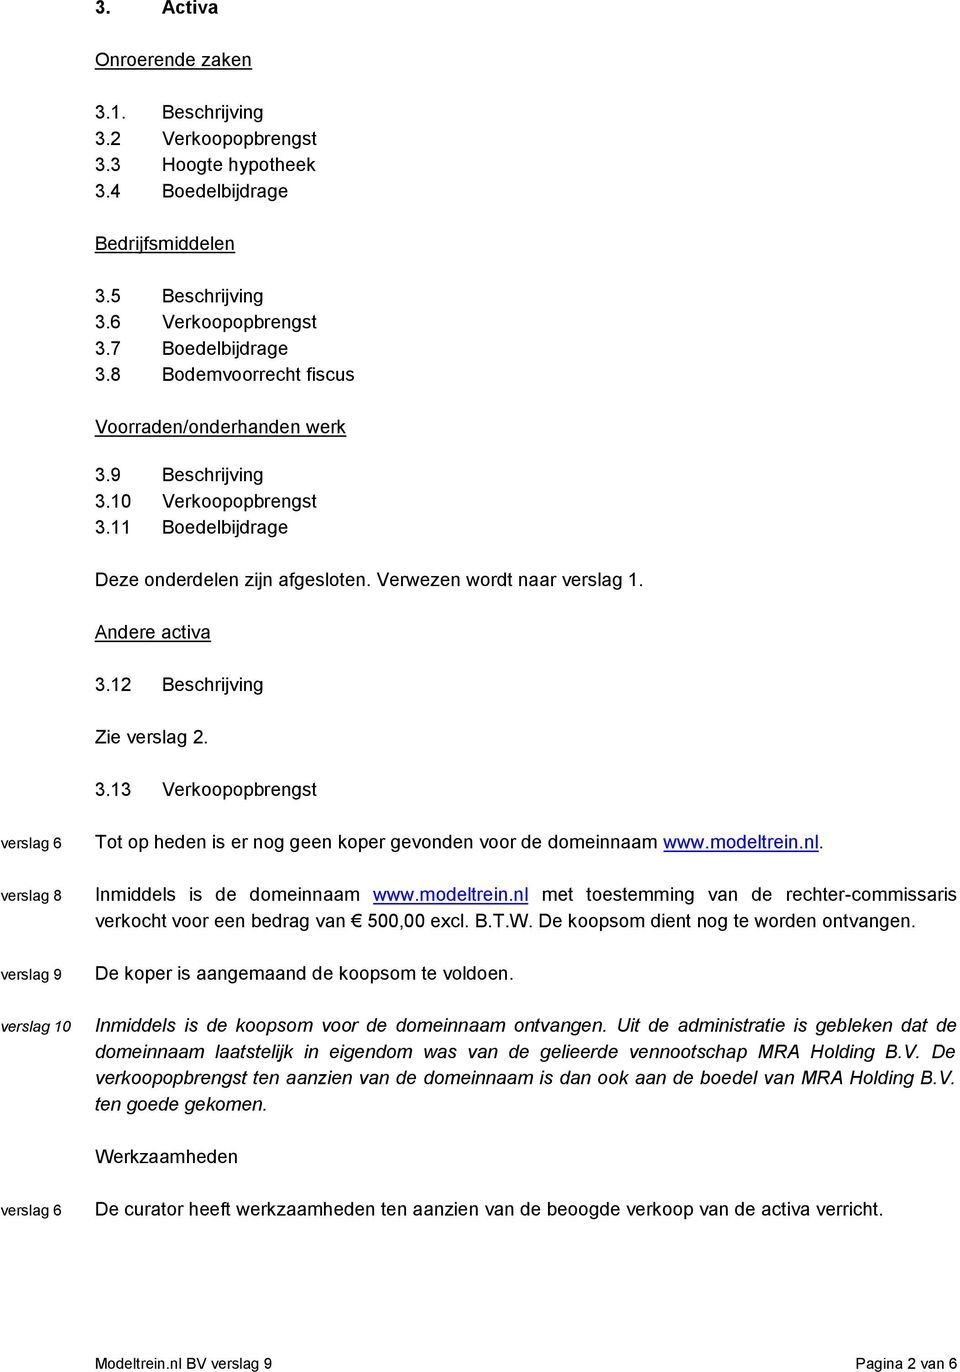 modeltrein.nl. verslag 8 Inmiddels is de domeinnaam www.modeltrein.nl met toestemming van de rechter-commissaris verkocht voor een bedrag van 500,00 excl. B.T.W.